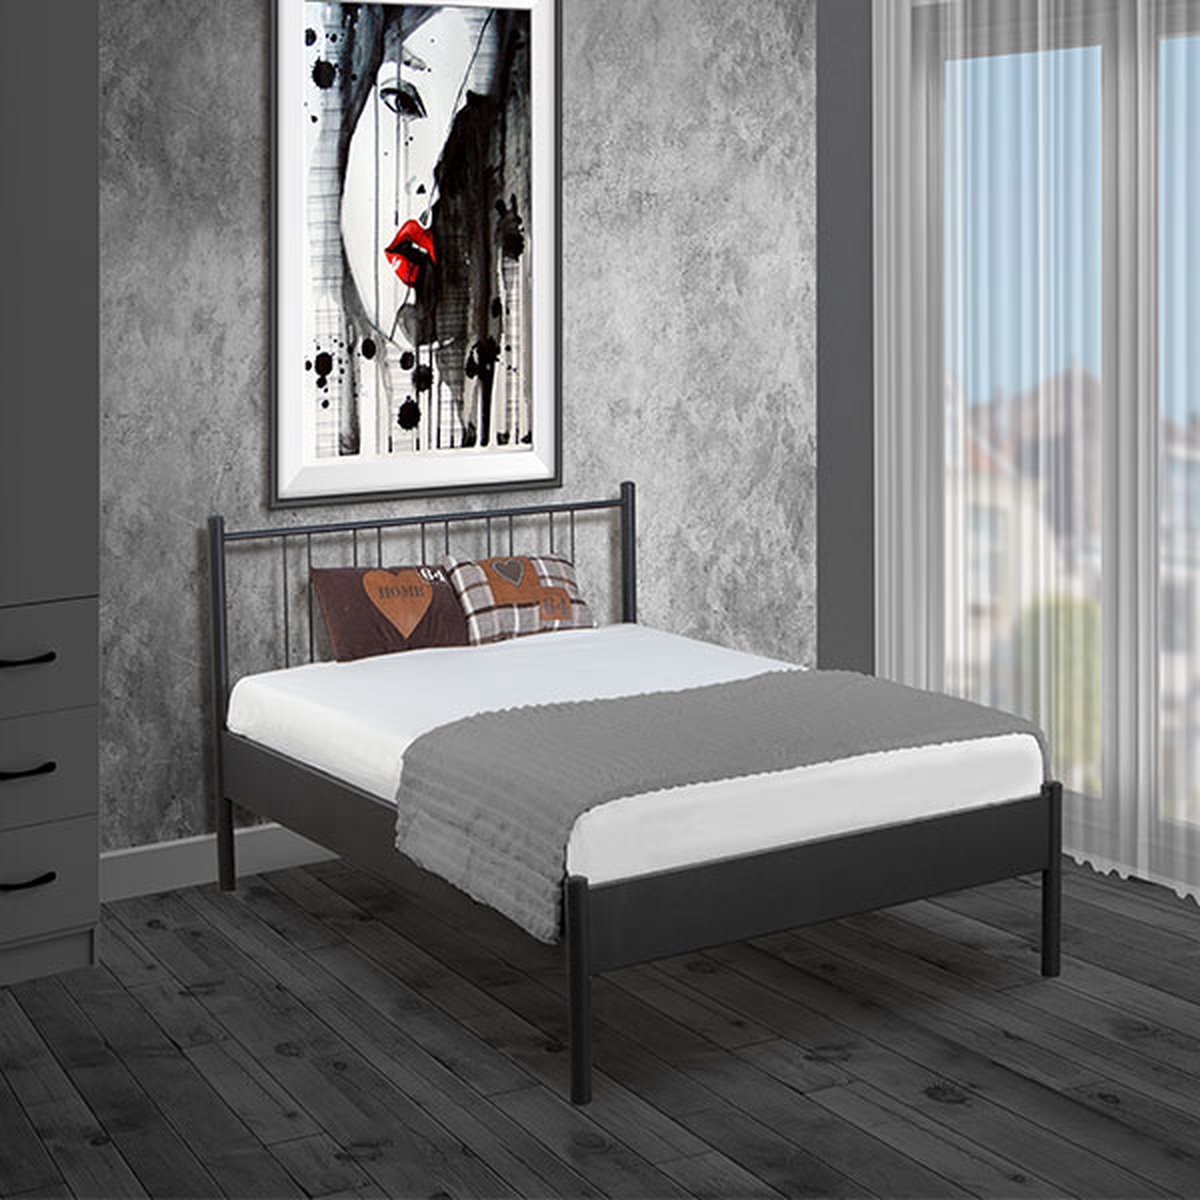 Bed Box Holland Metalen bed Moon zilver 90x220 lattenbodem metaal -design